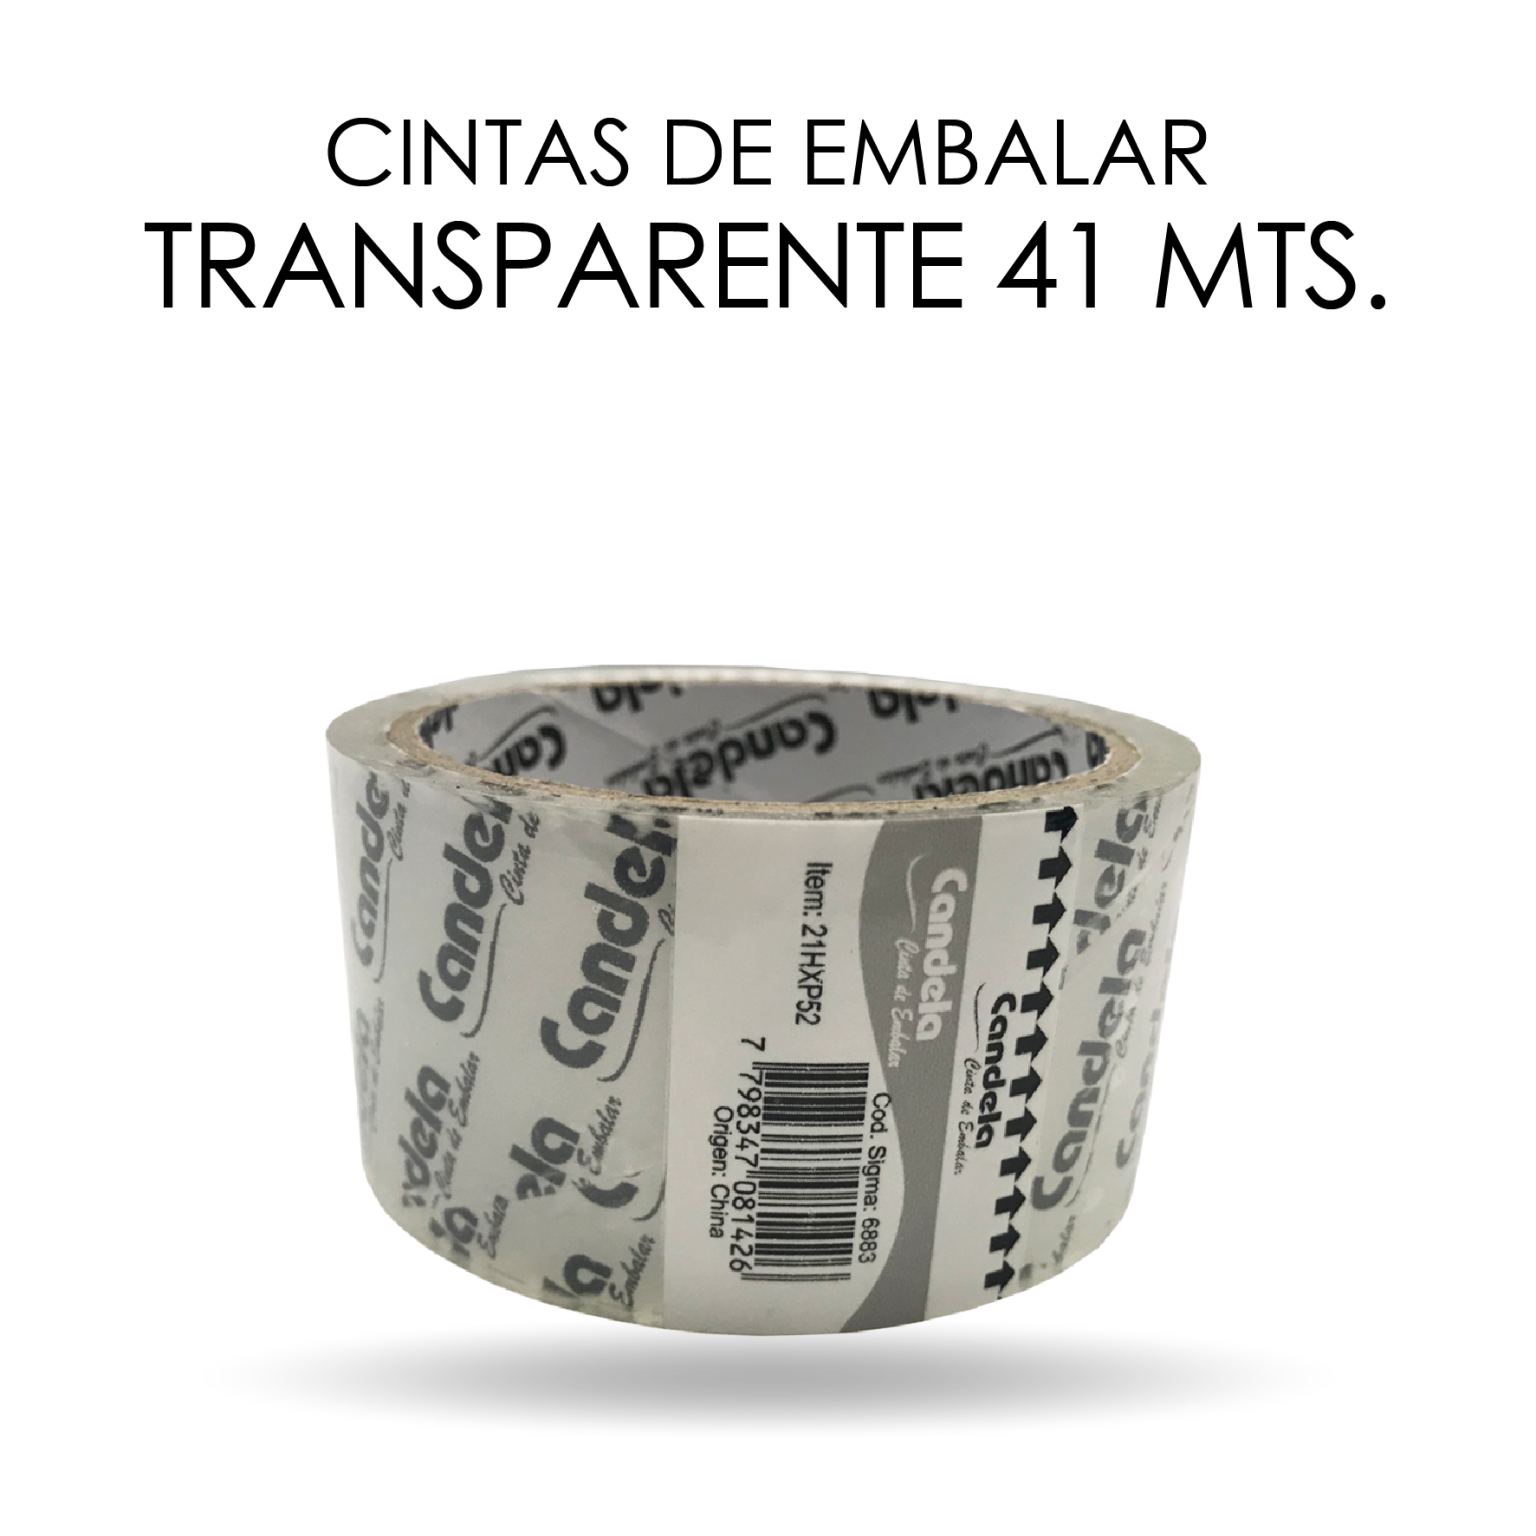 CINTA DE EMBALAR TRANSPARENTE x41 mts